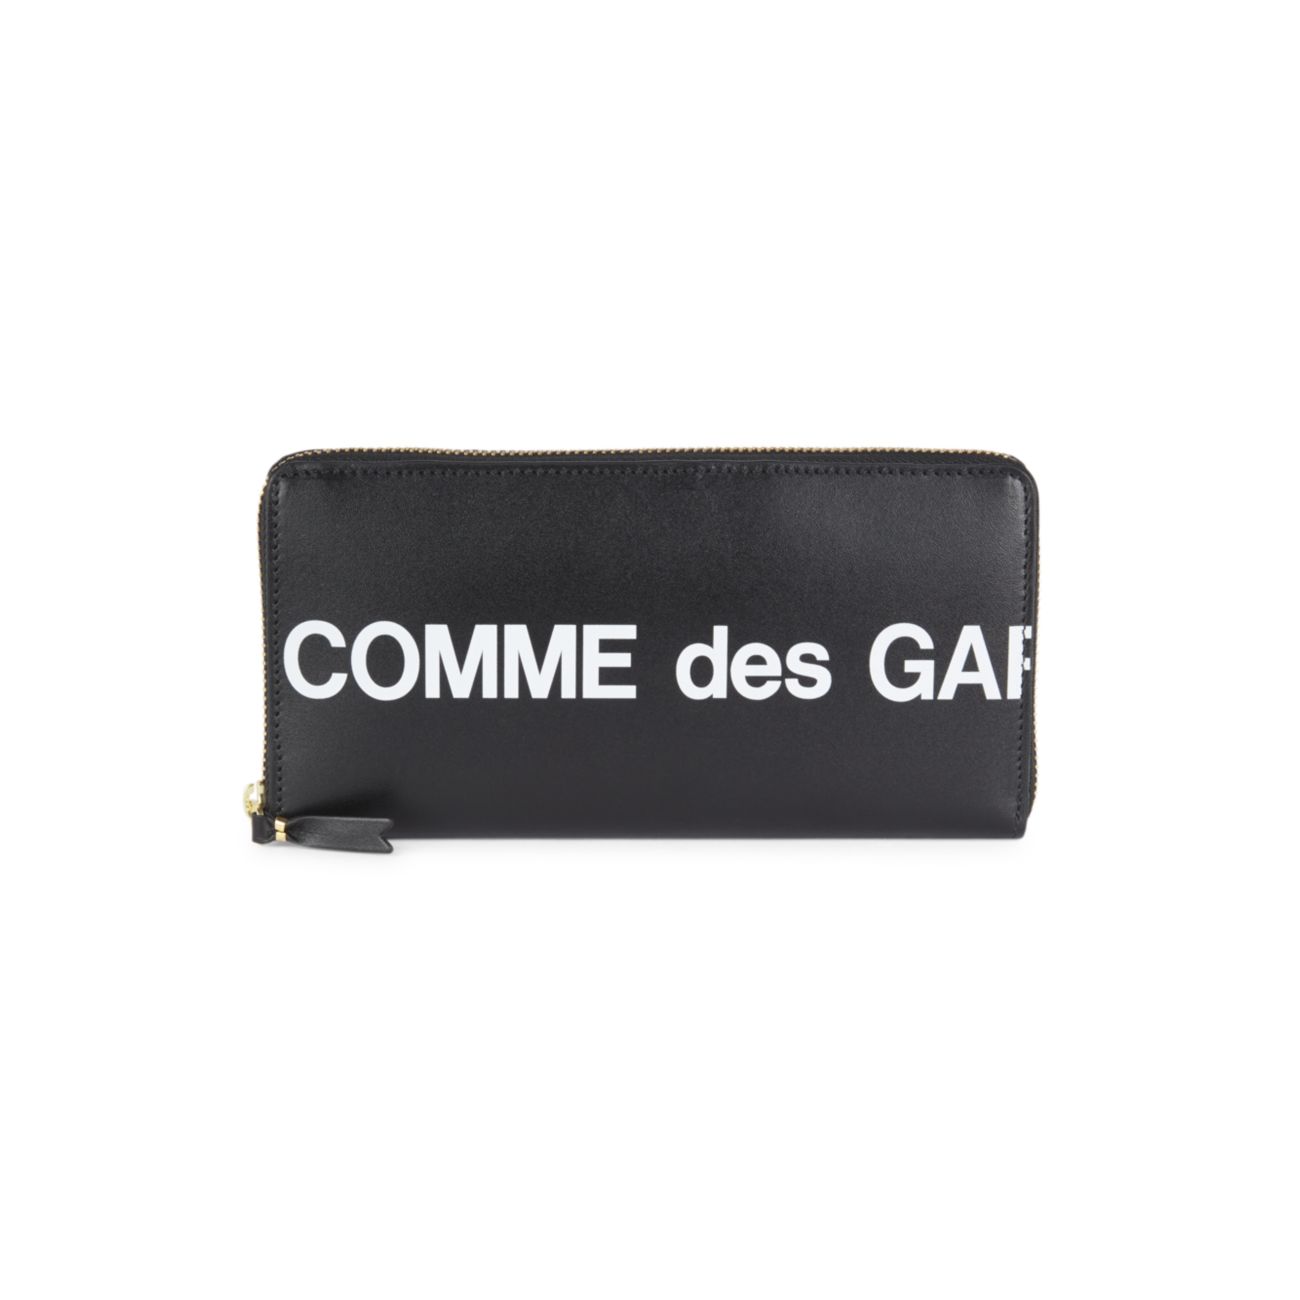 Кожаный кошелек с огромным логотипом Comme des Garcons